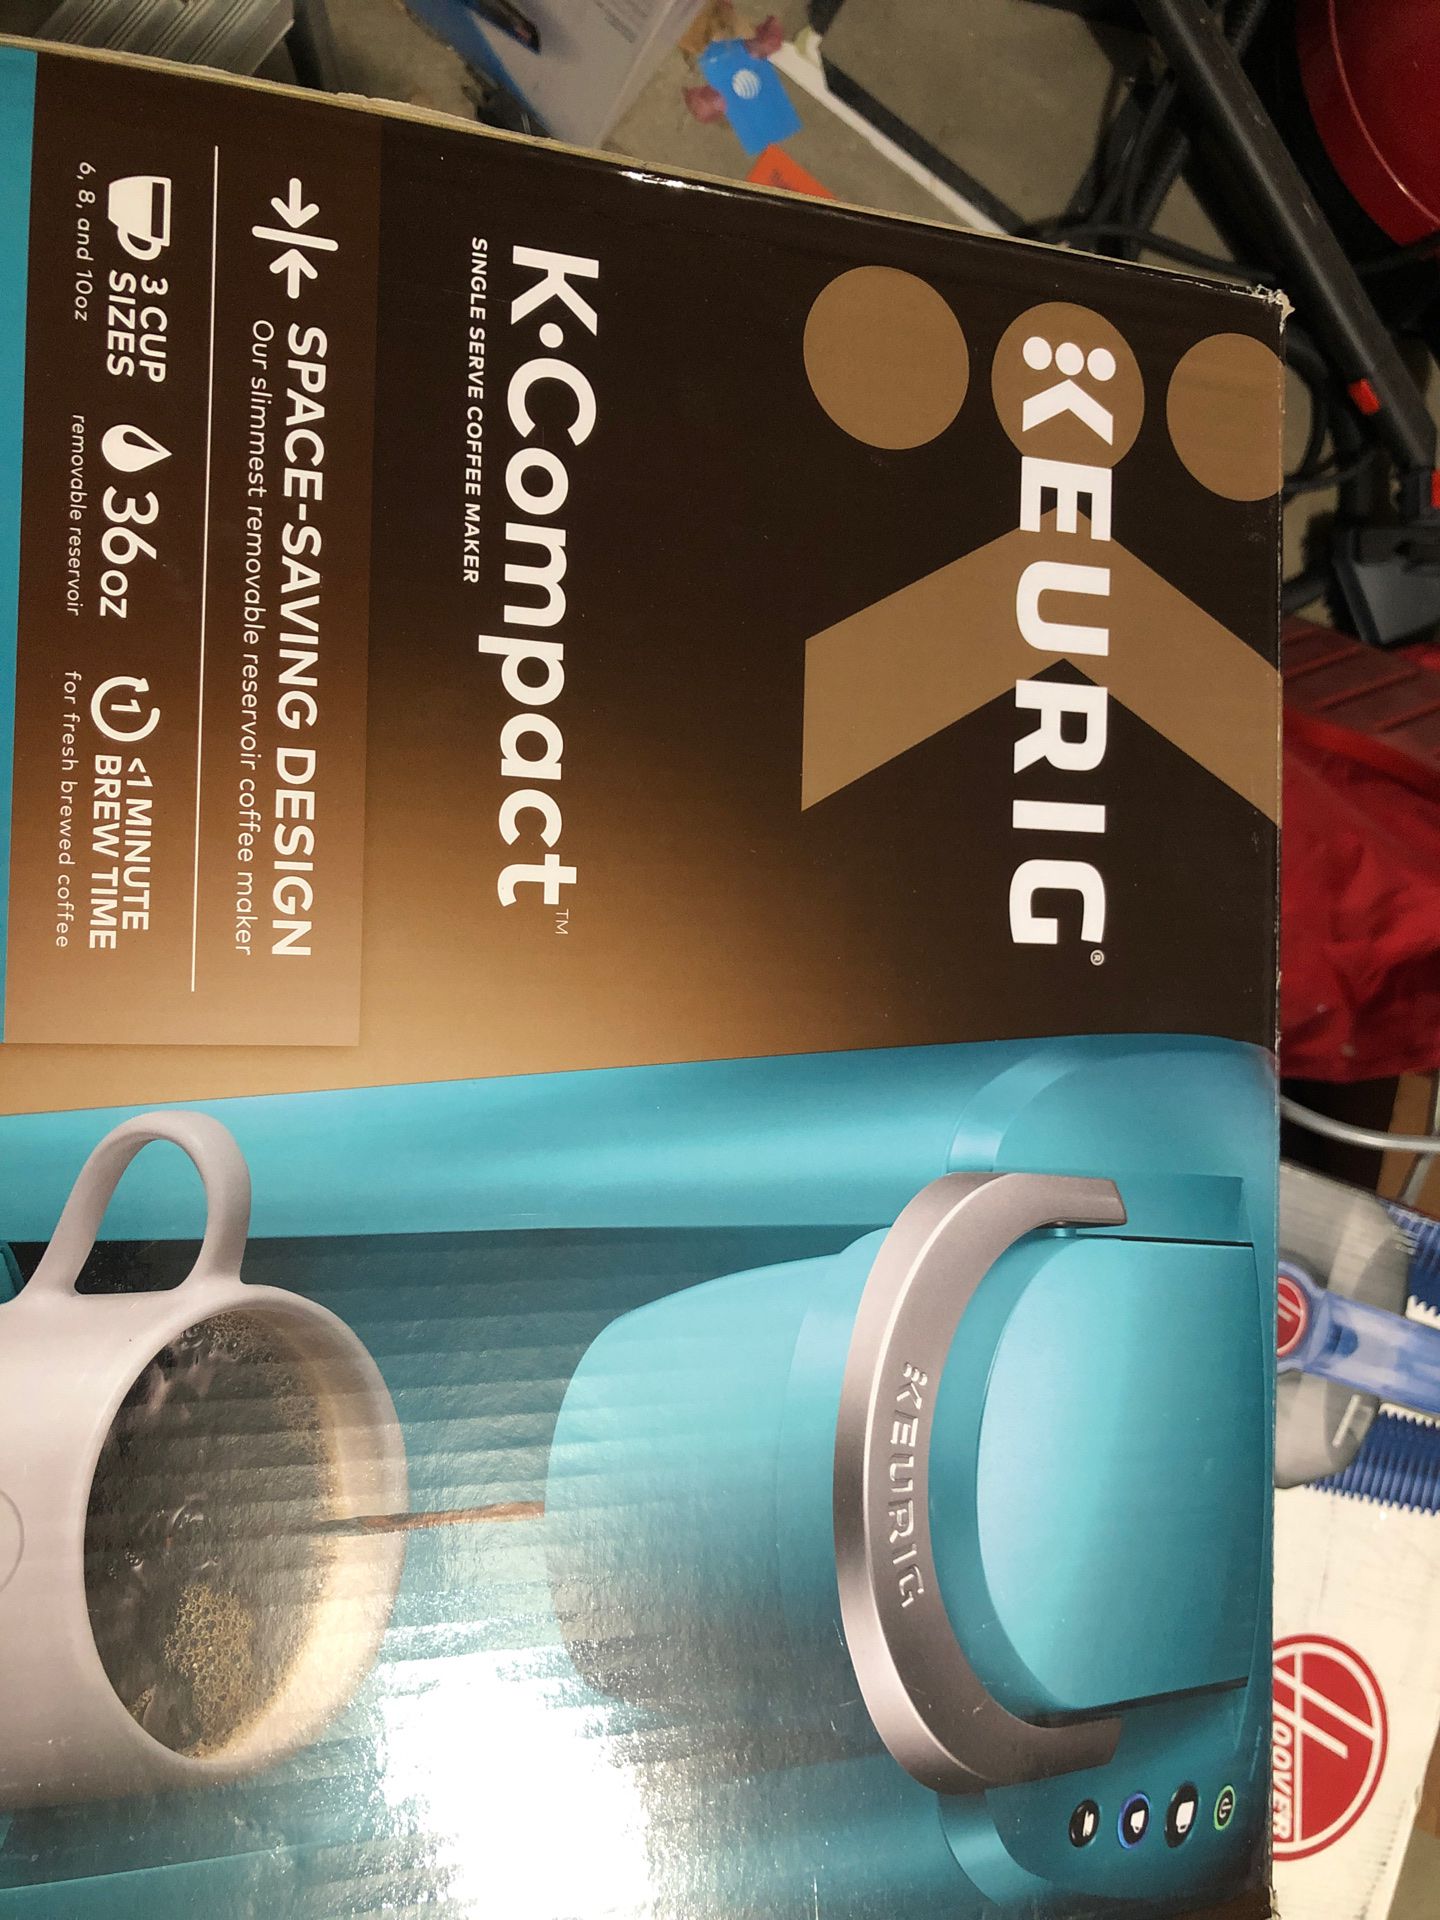 Keurig Single Serve Coffee Maker in Box